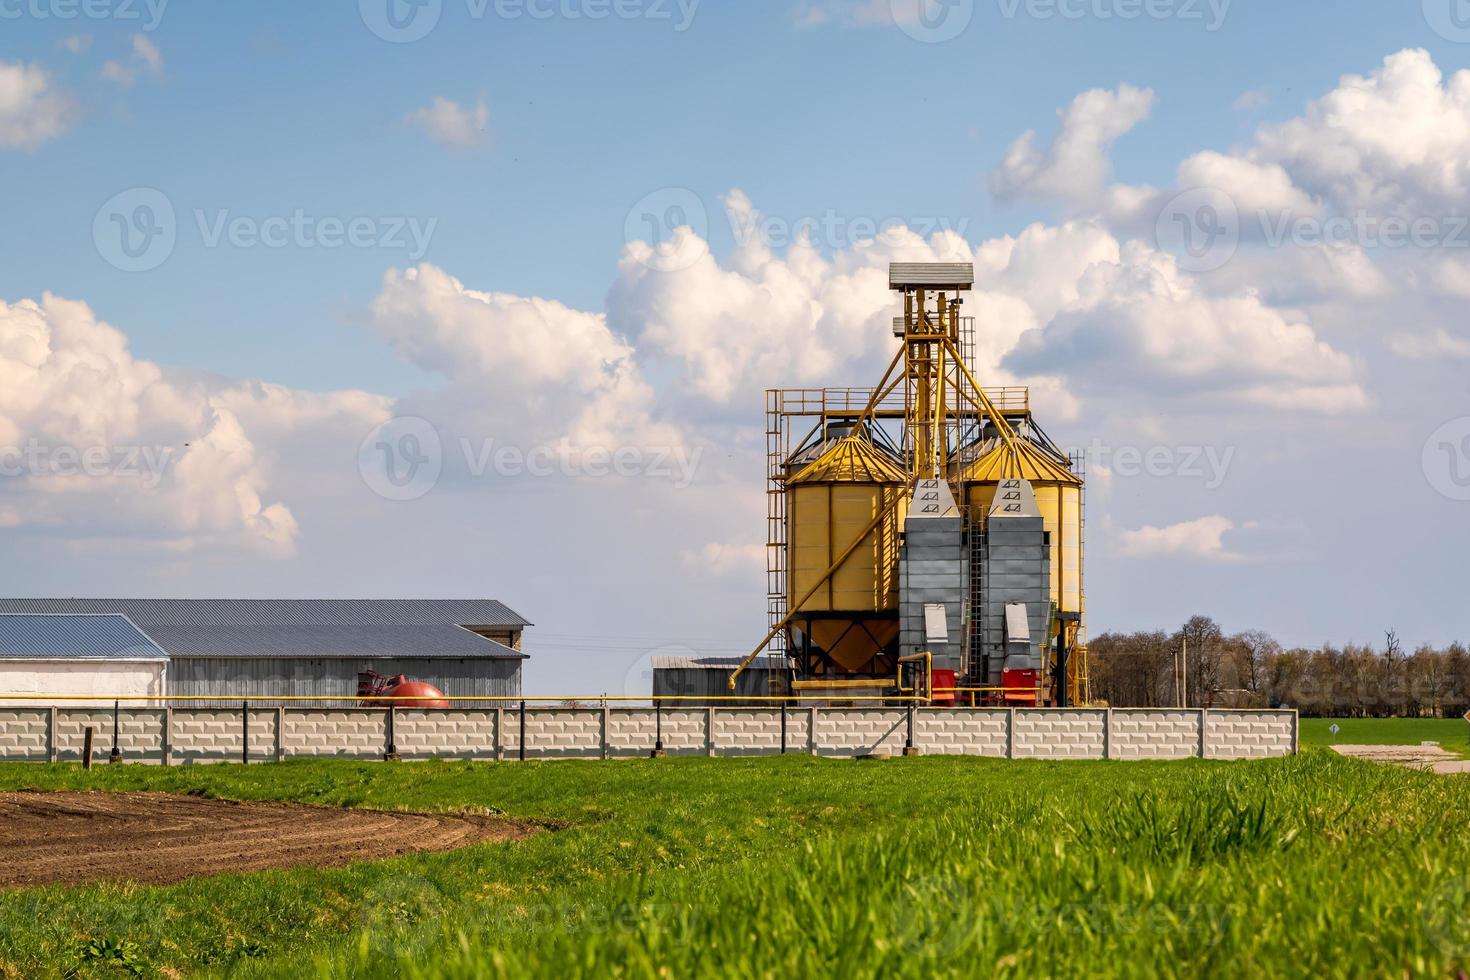 Panoramablick auf Agro-Silos Getreidespeicher Aufzug auf Agro-Verarbeitungsanlage zur Verarbeitung Trocknung Reinigung und Lagerung von landwirtschaftlichen Produkten, Mehl, Getreide und Getreide. foto